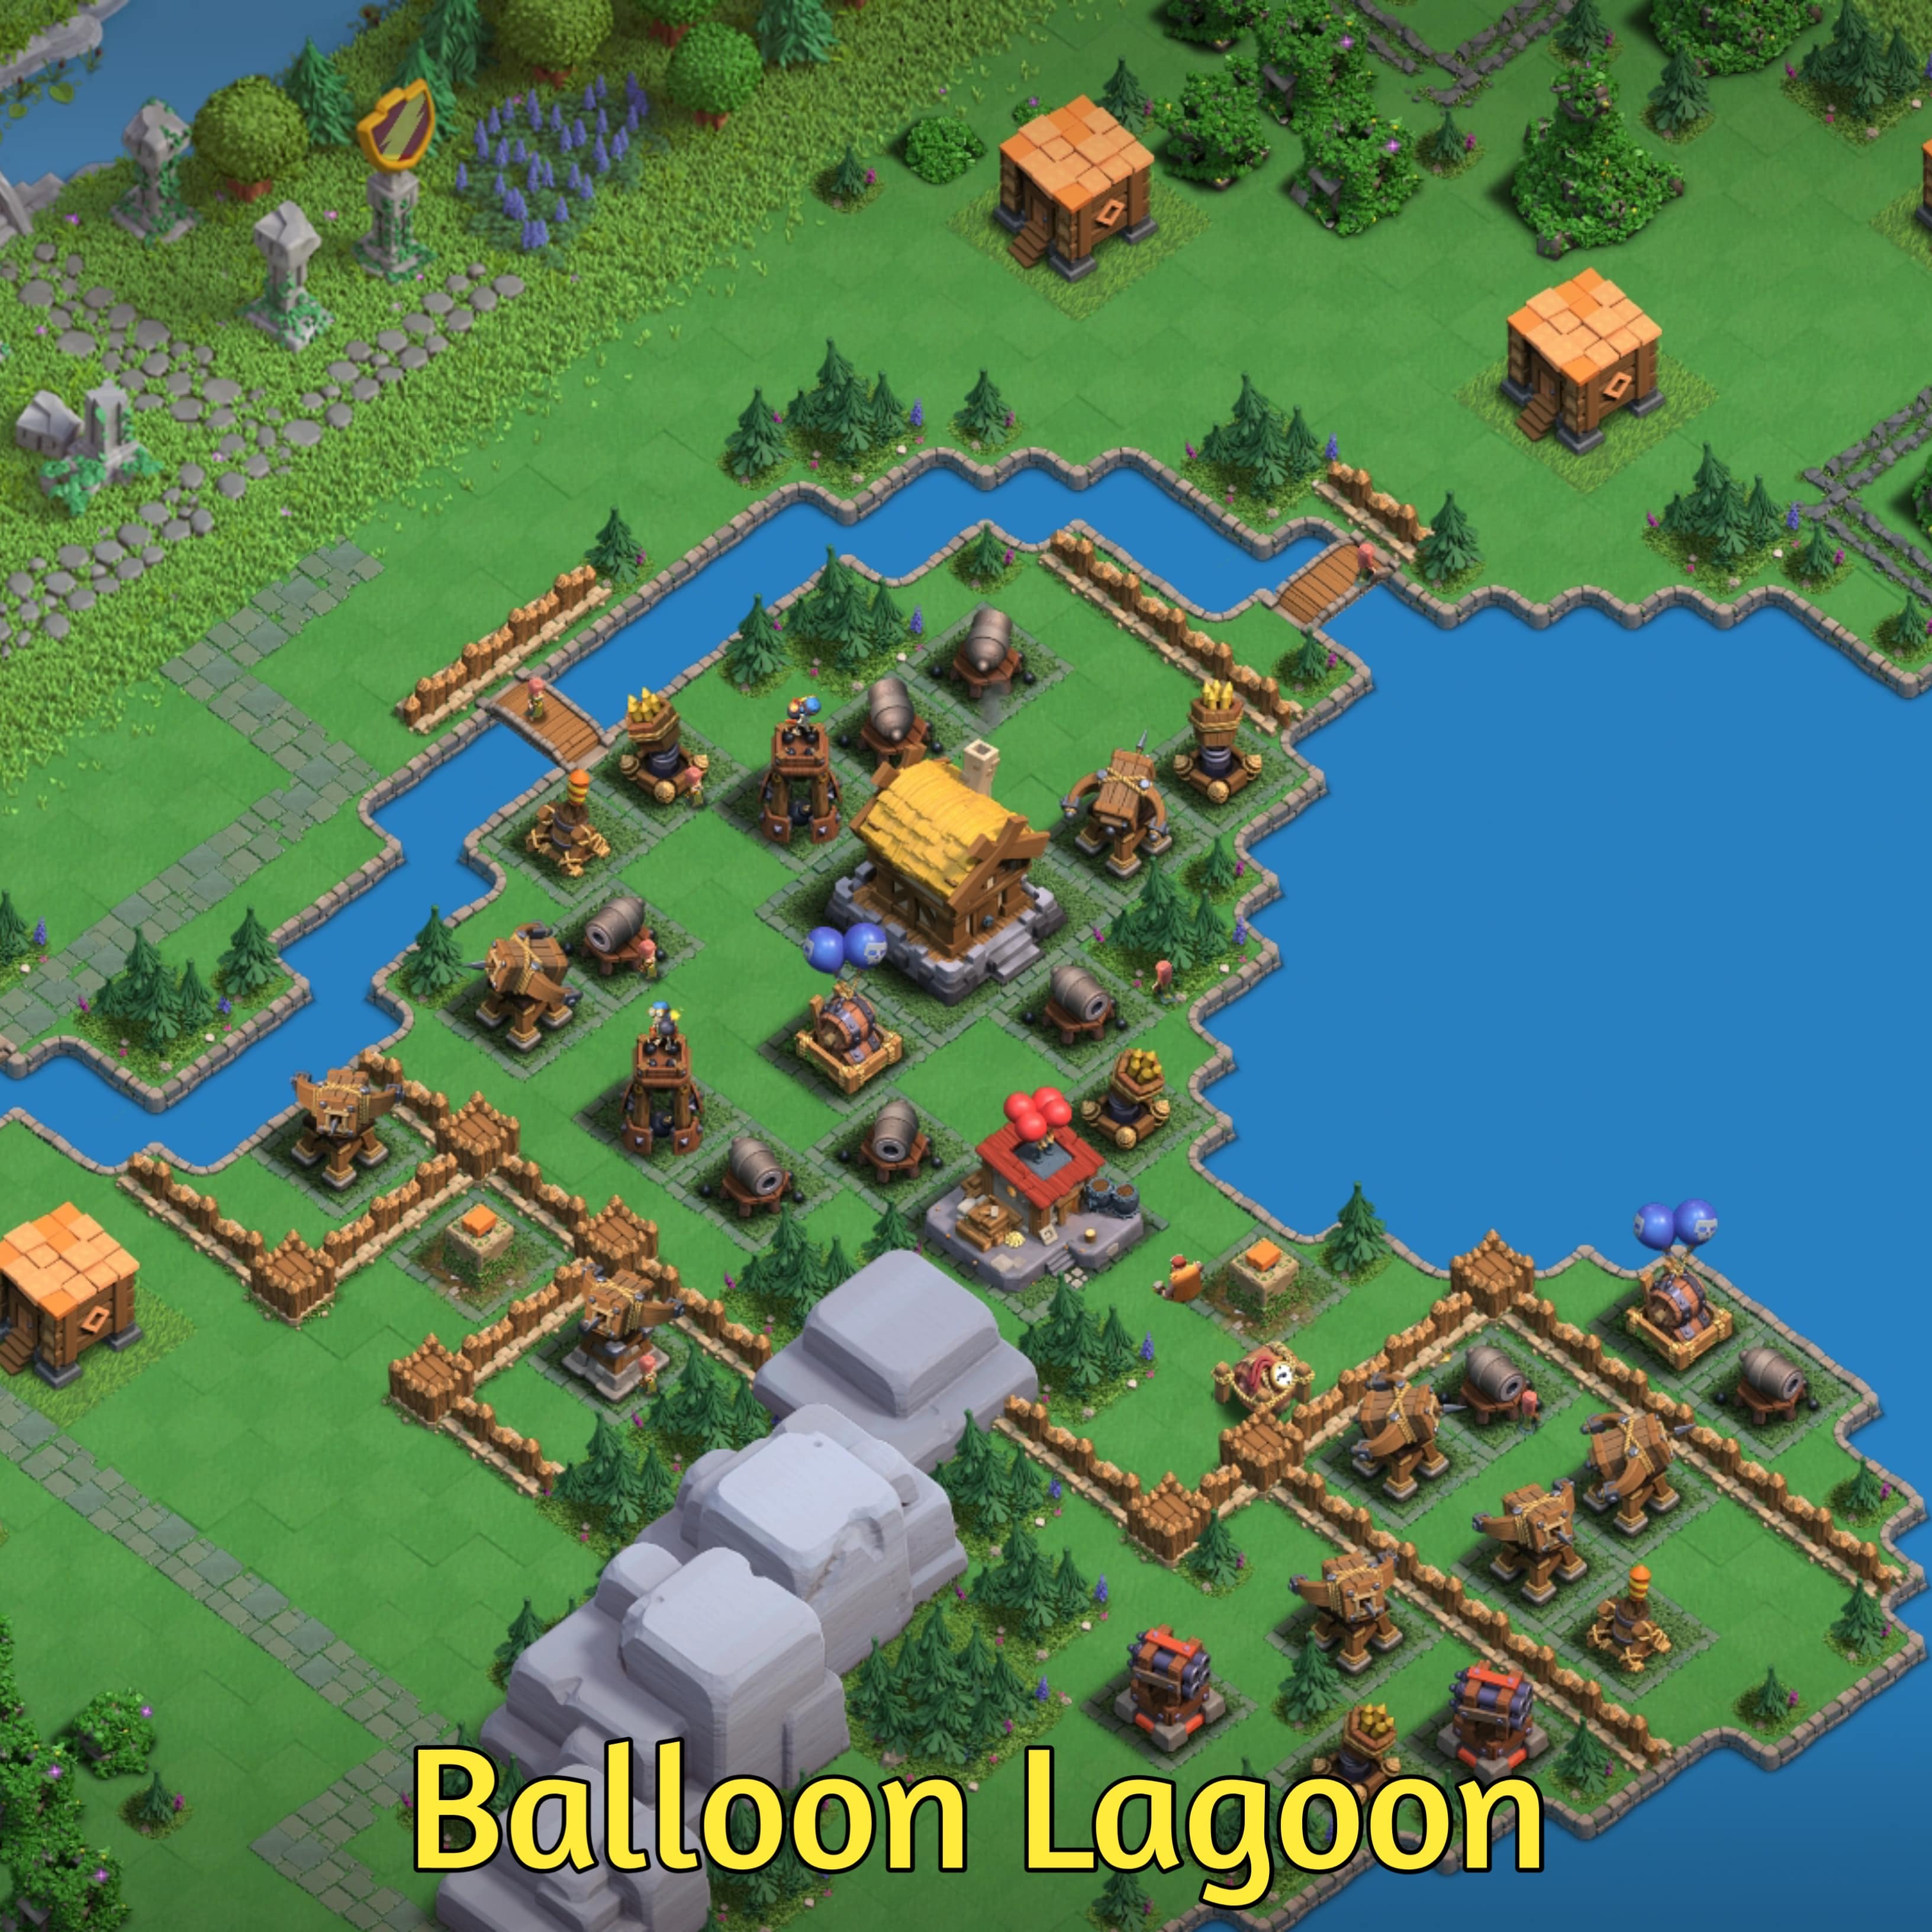 Balloon Lagoon base